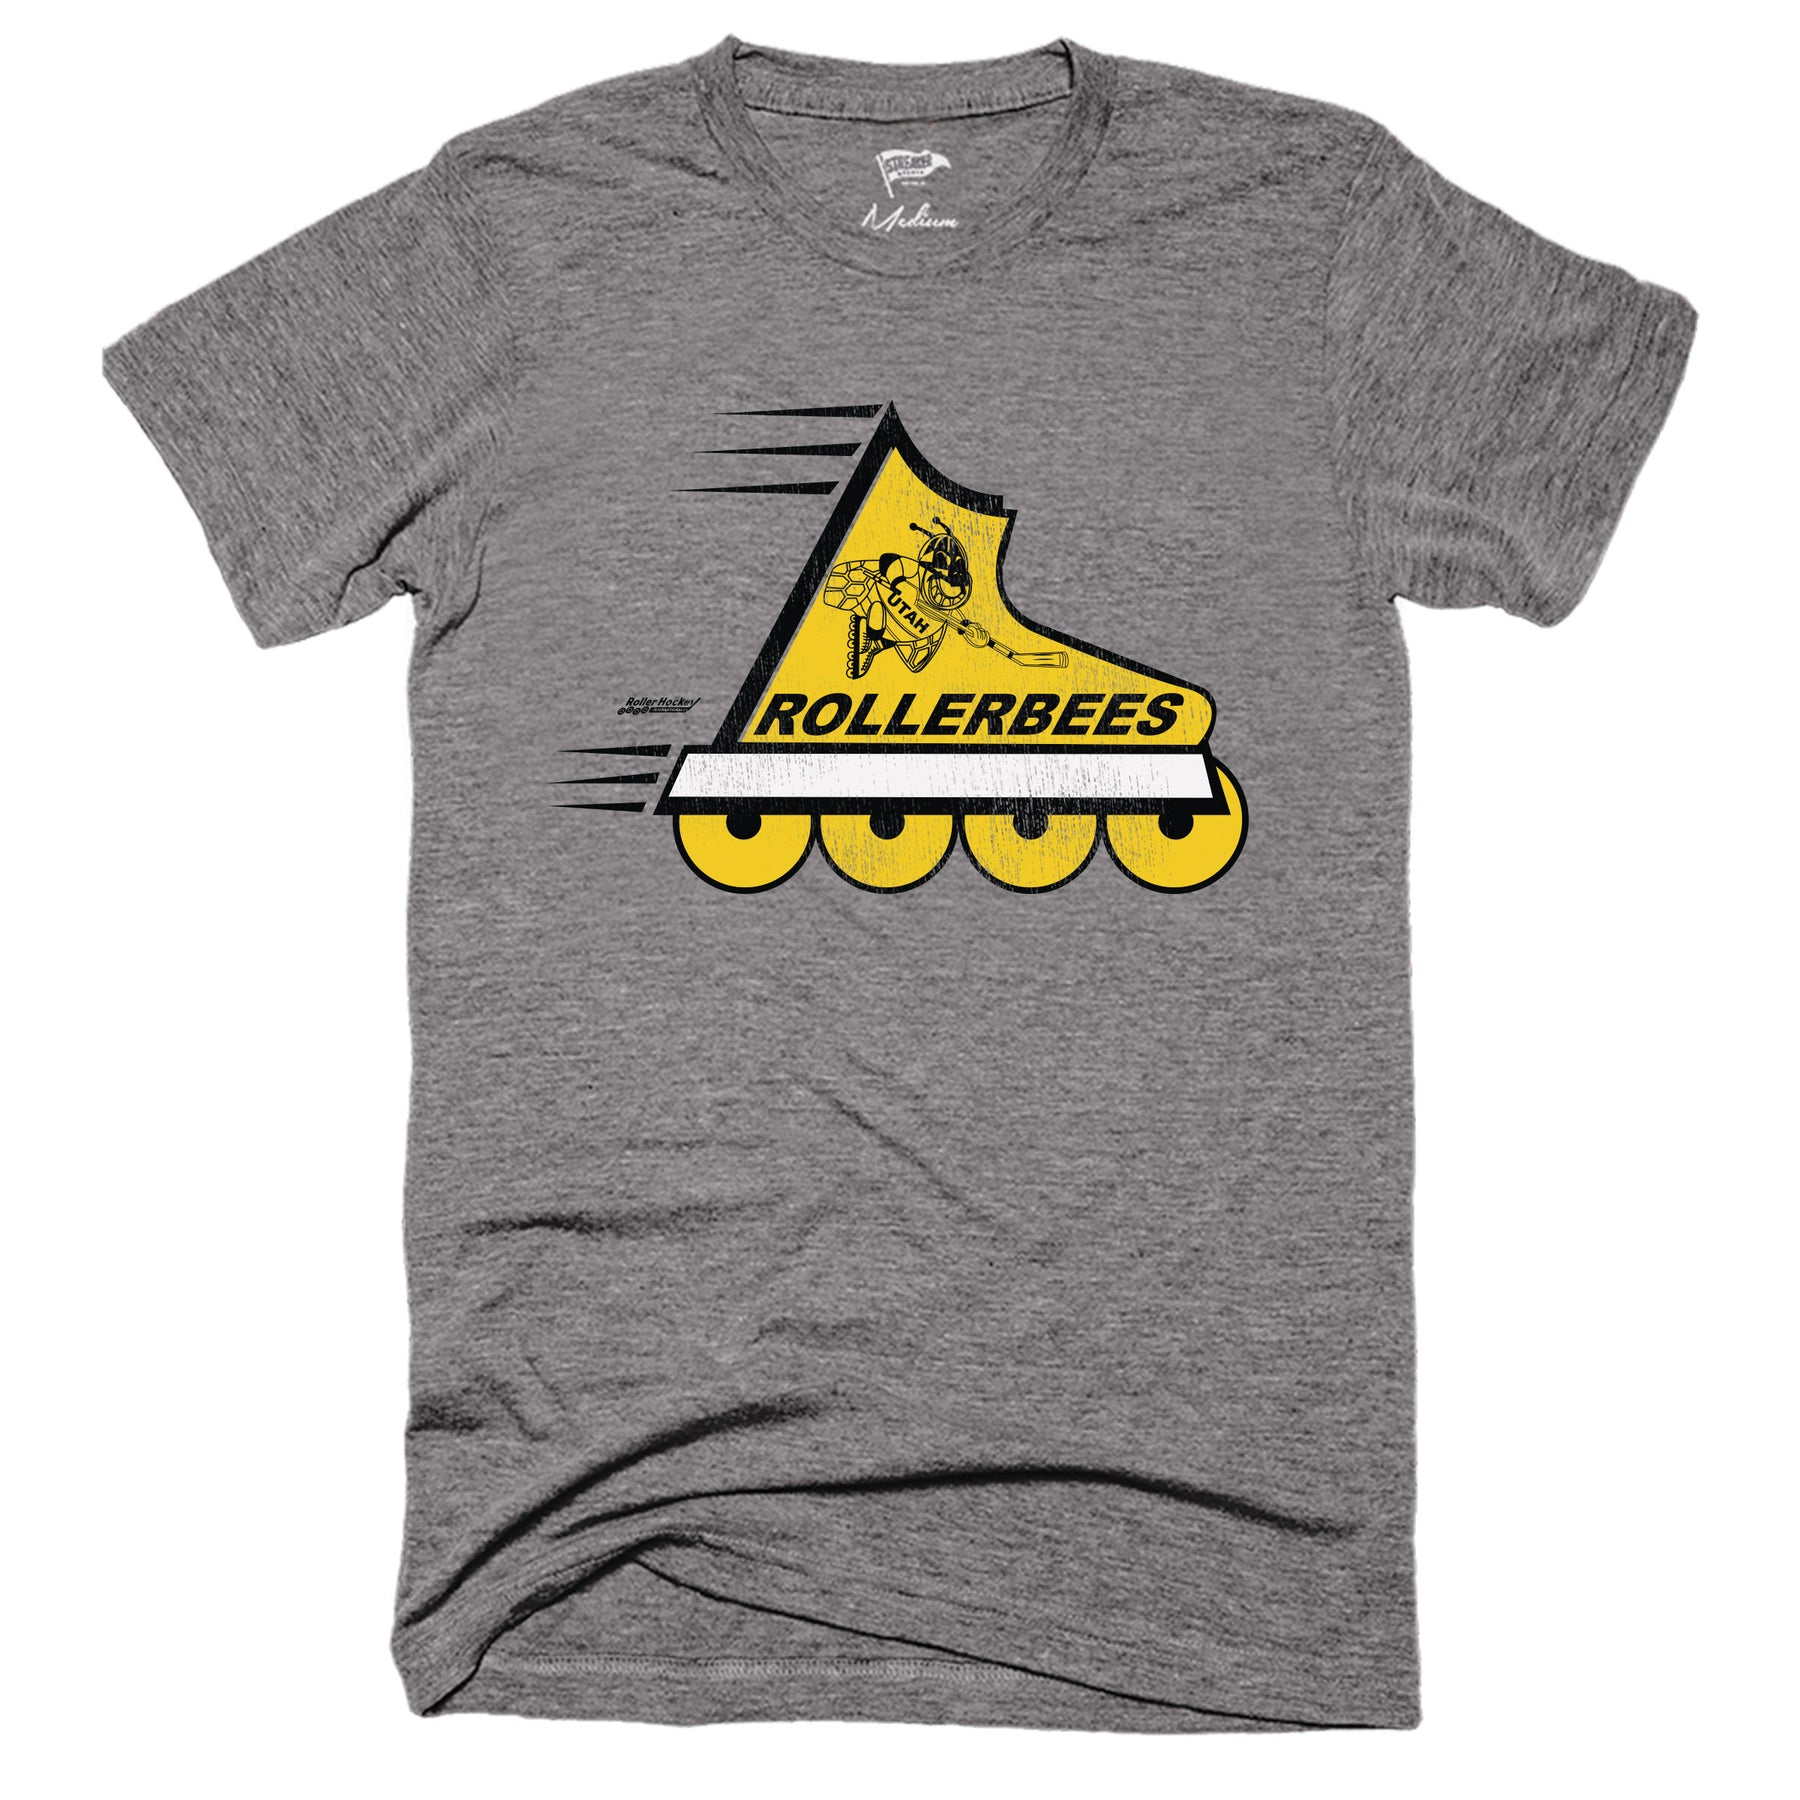 Push Push Coast T Shirt.kid's Cotton Tee.skateboard Shirt